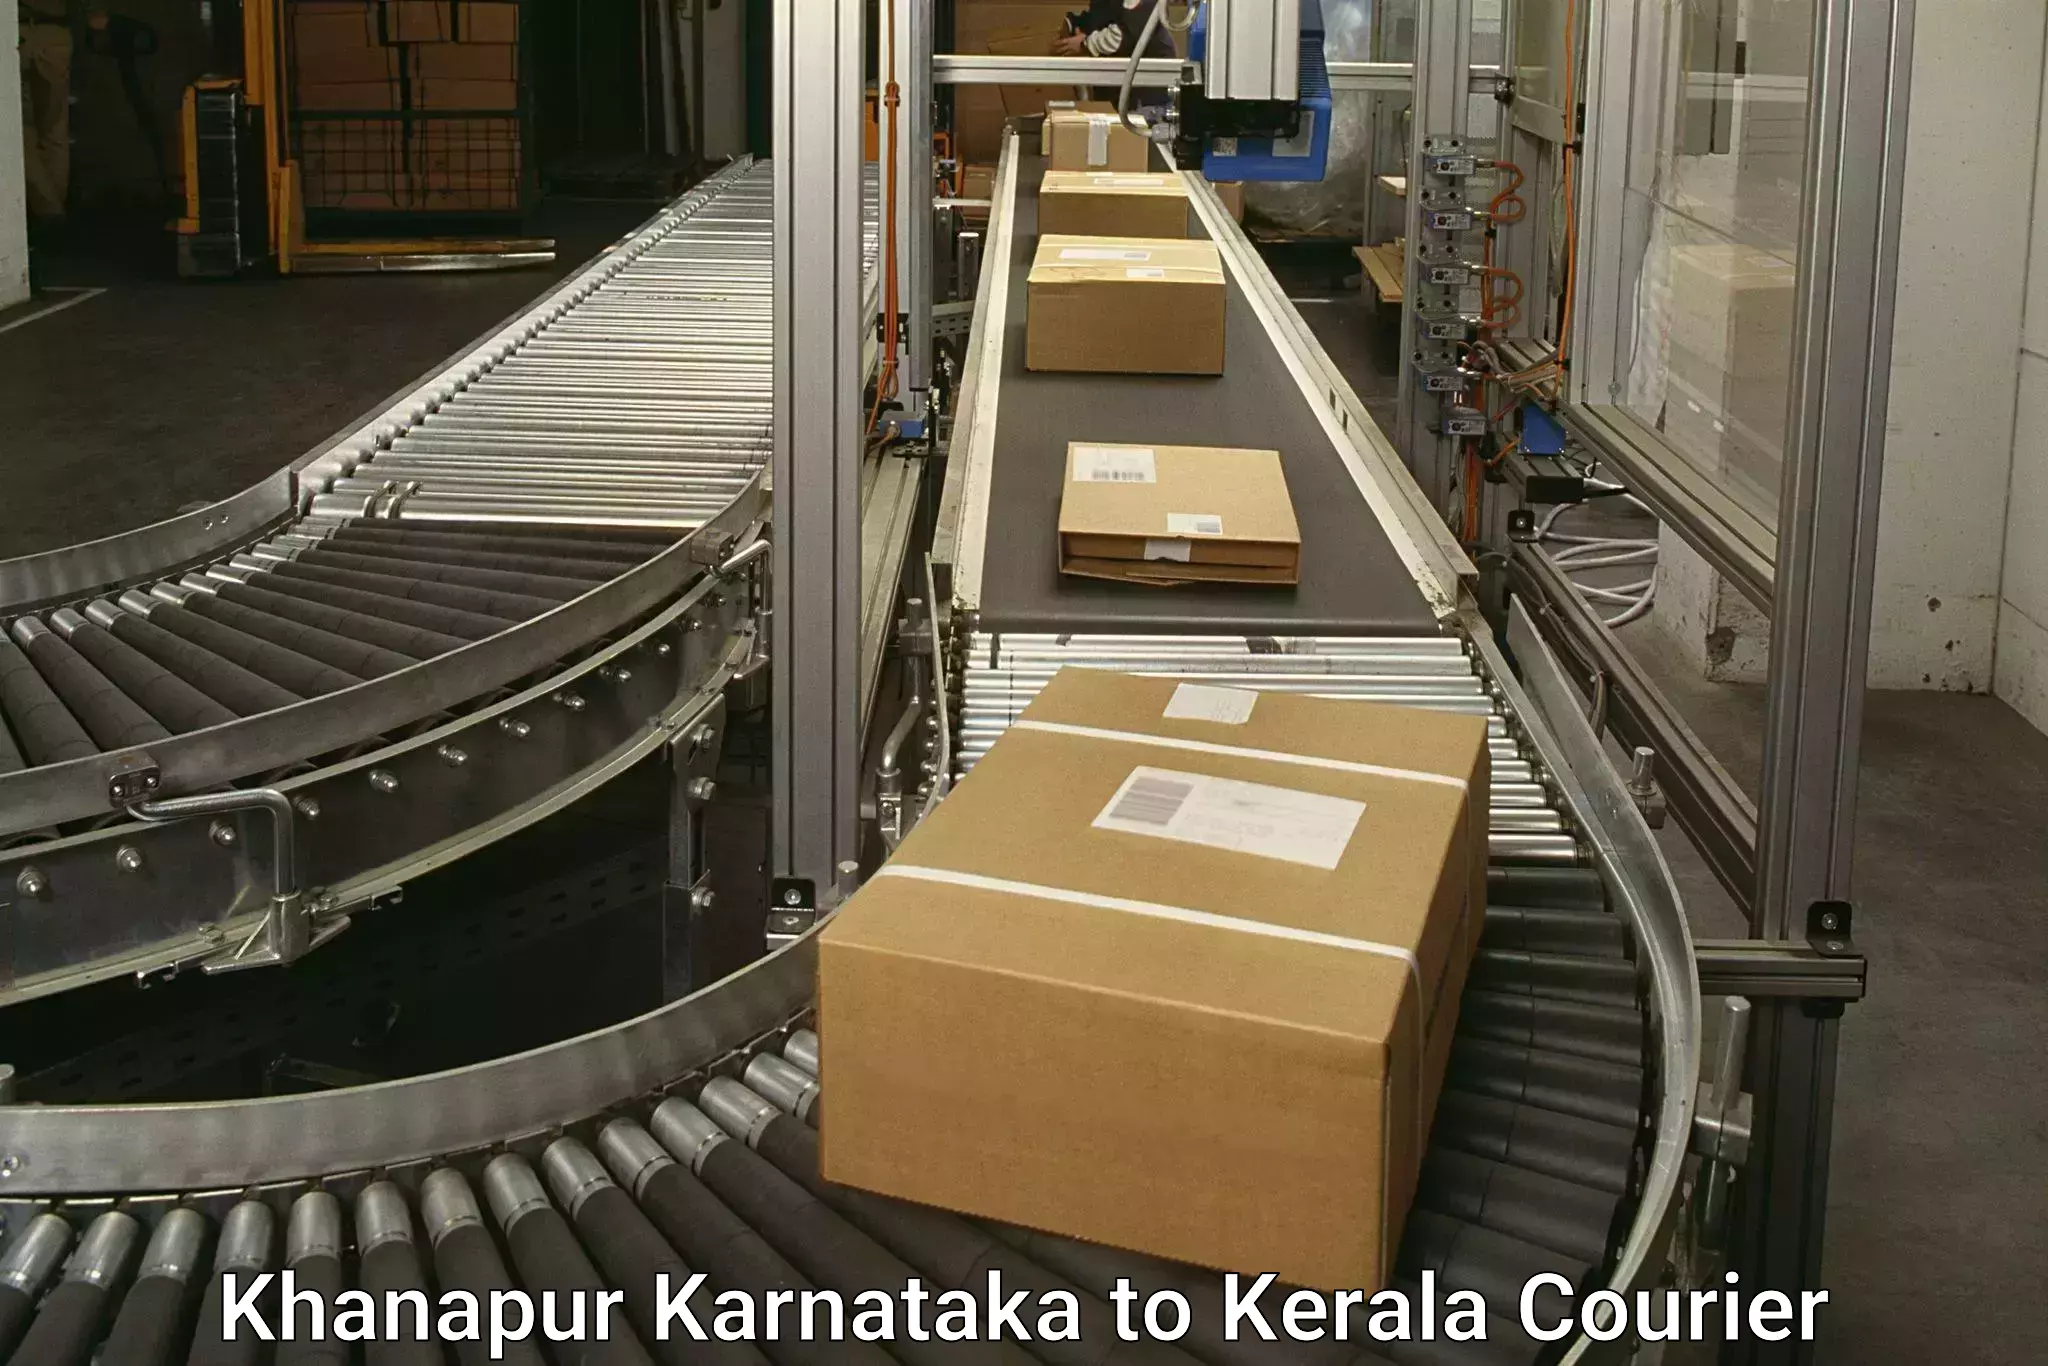 Express postal services Khanapur Karnataka to Punalur